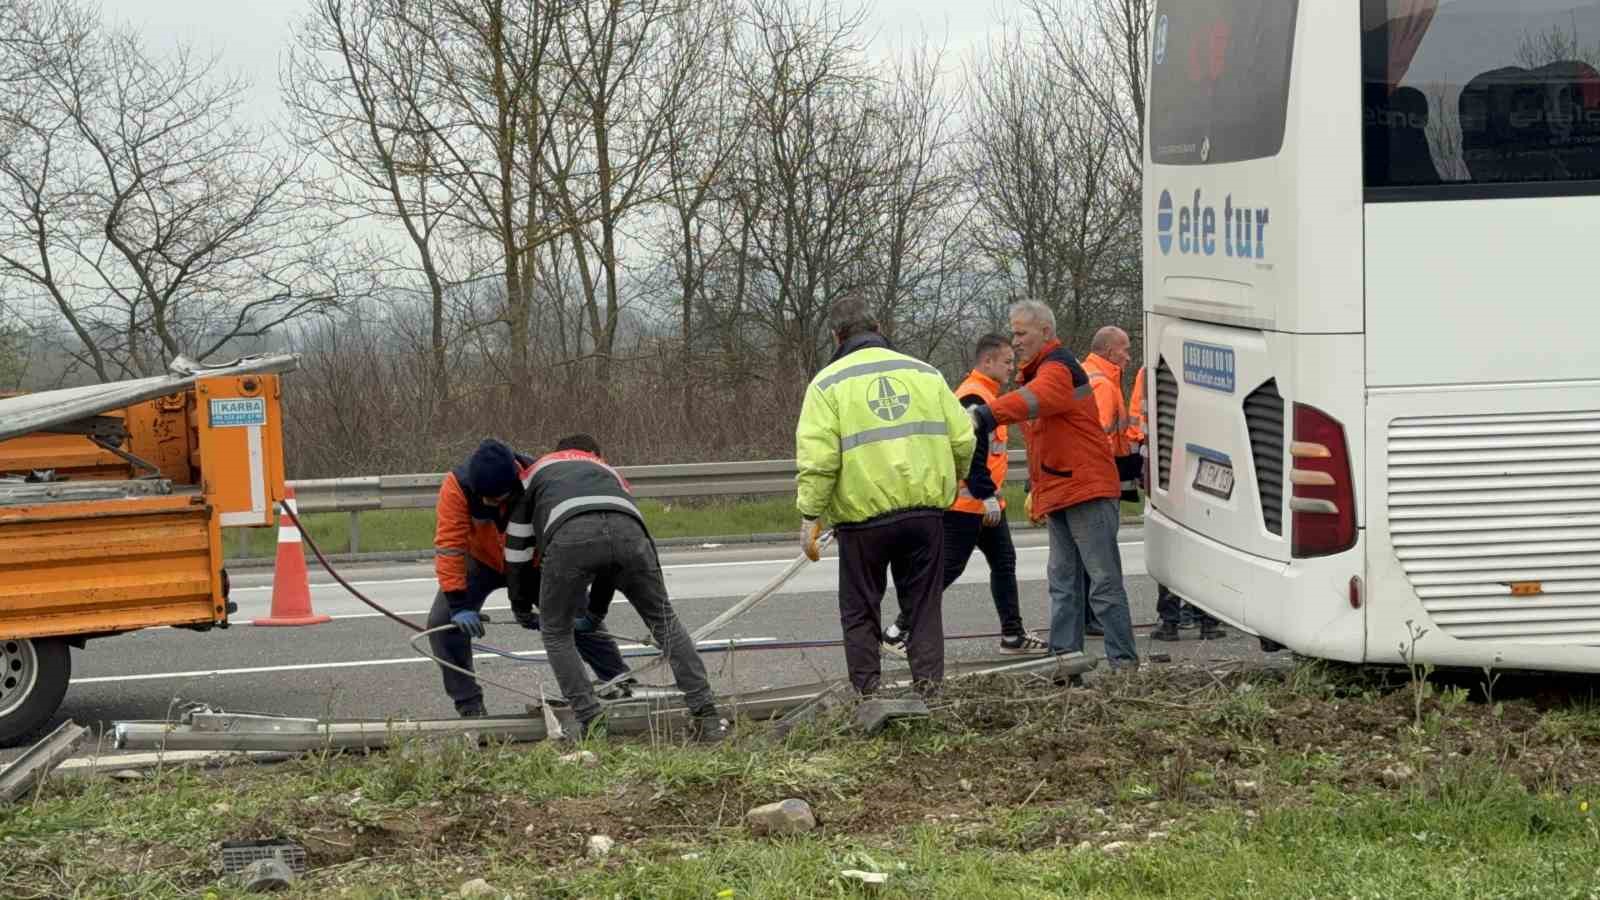 Tırla çarpışan otobüs refüje çıktı: 1’i ağır 15 yaralı
